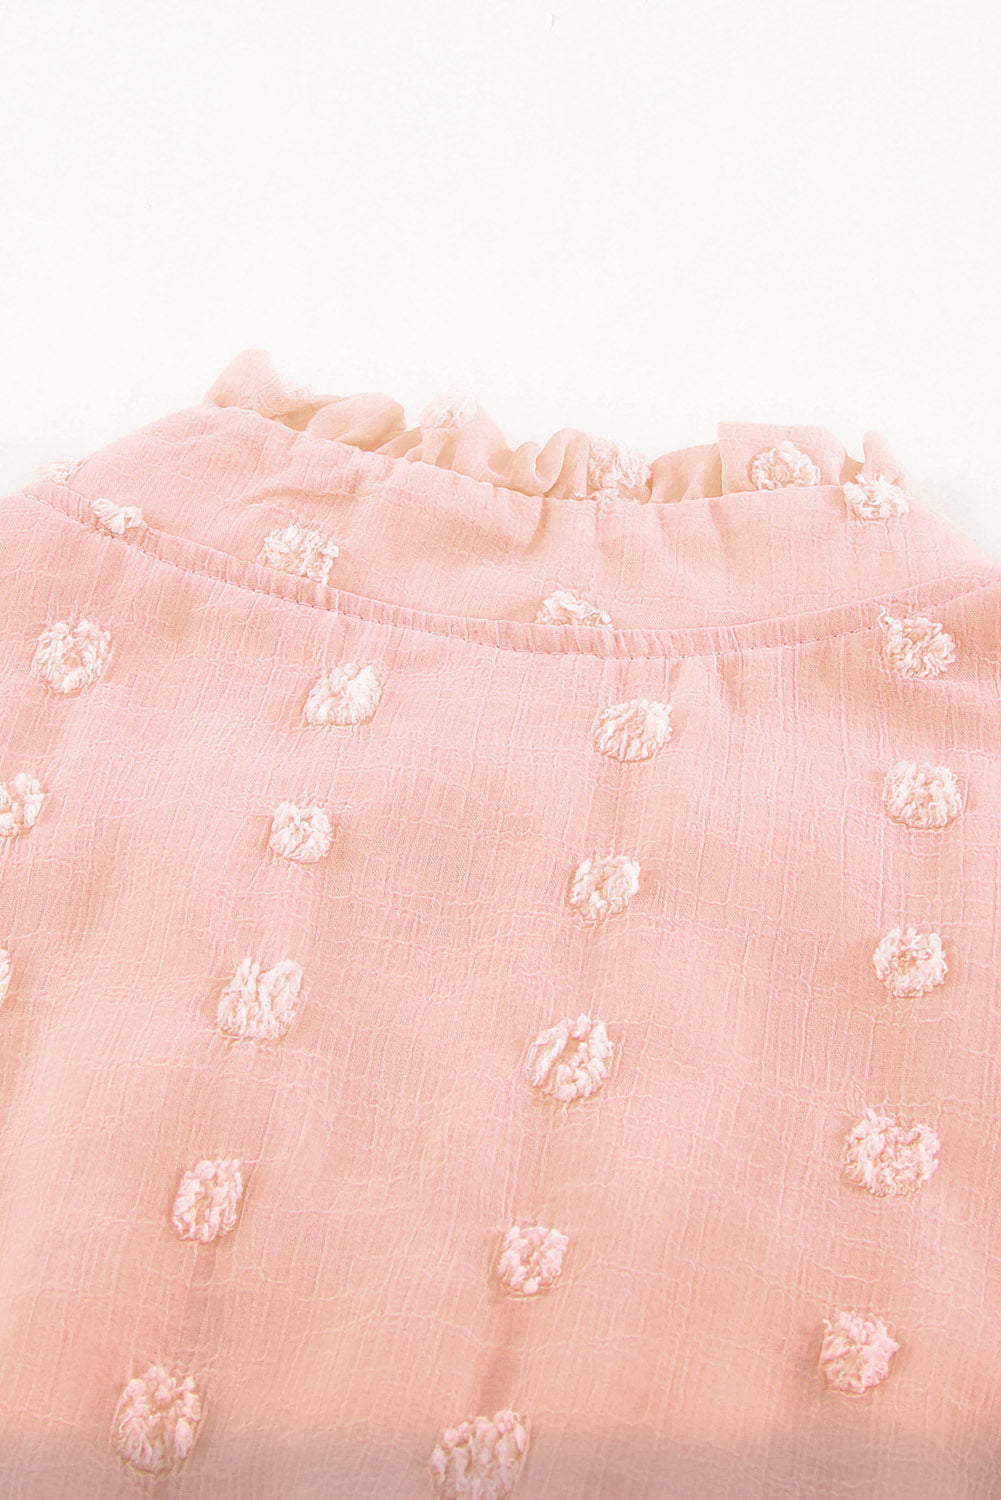 Pink Womens Sleeveless Split Neck Pom Pom Flowy Mini Dress LC225086-10